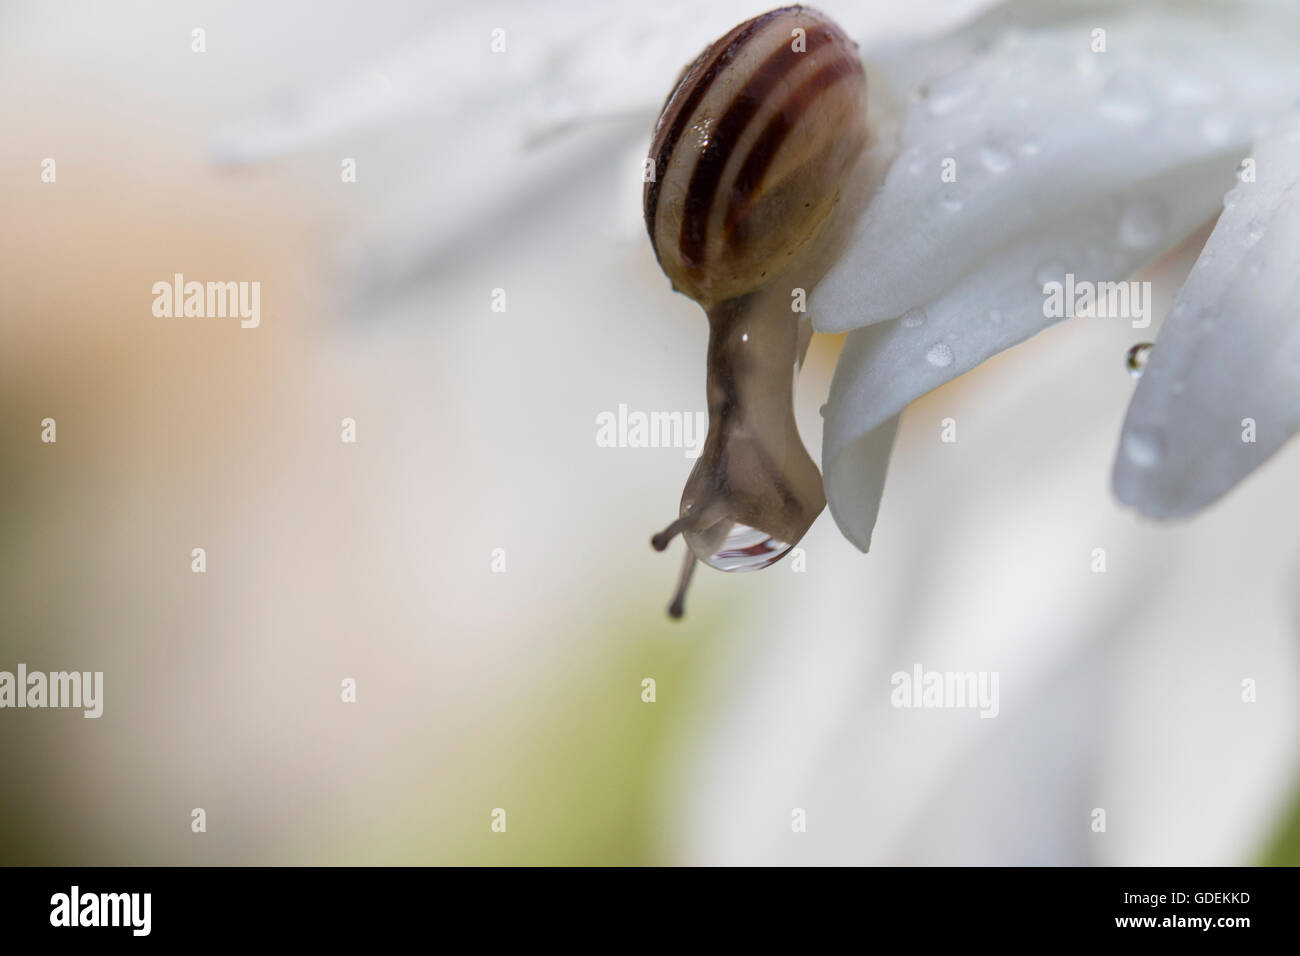 Schnecke auf einer Daisy Blume nach oben bewegen Stockfoto